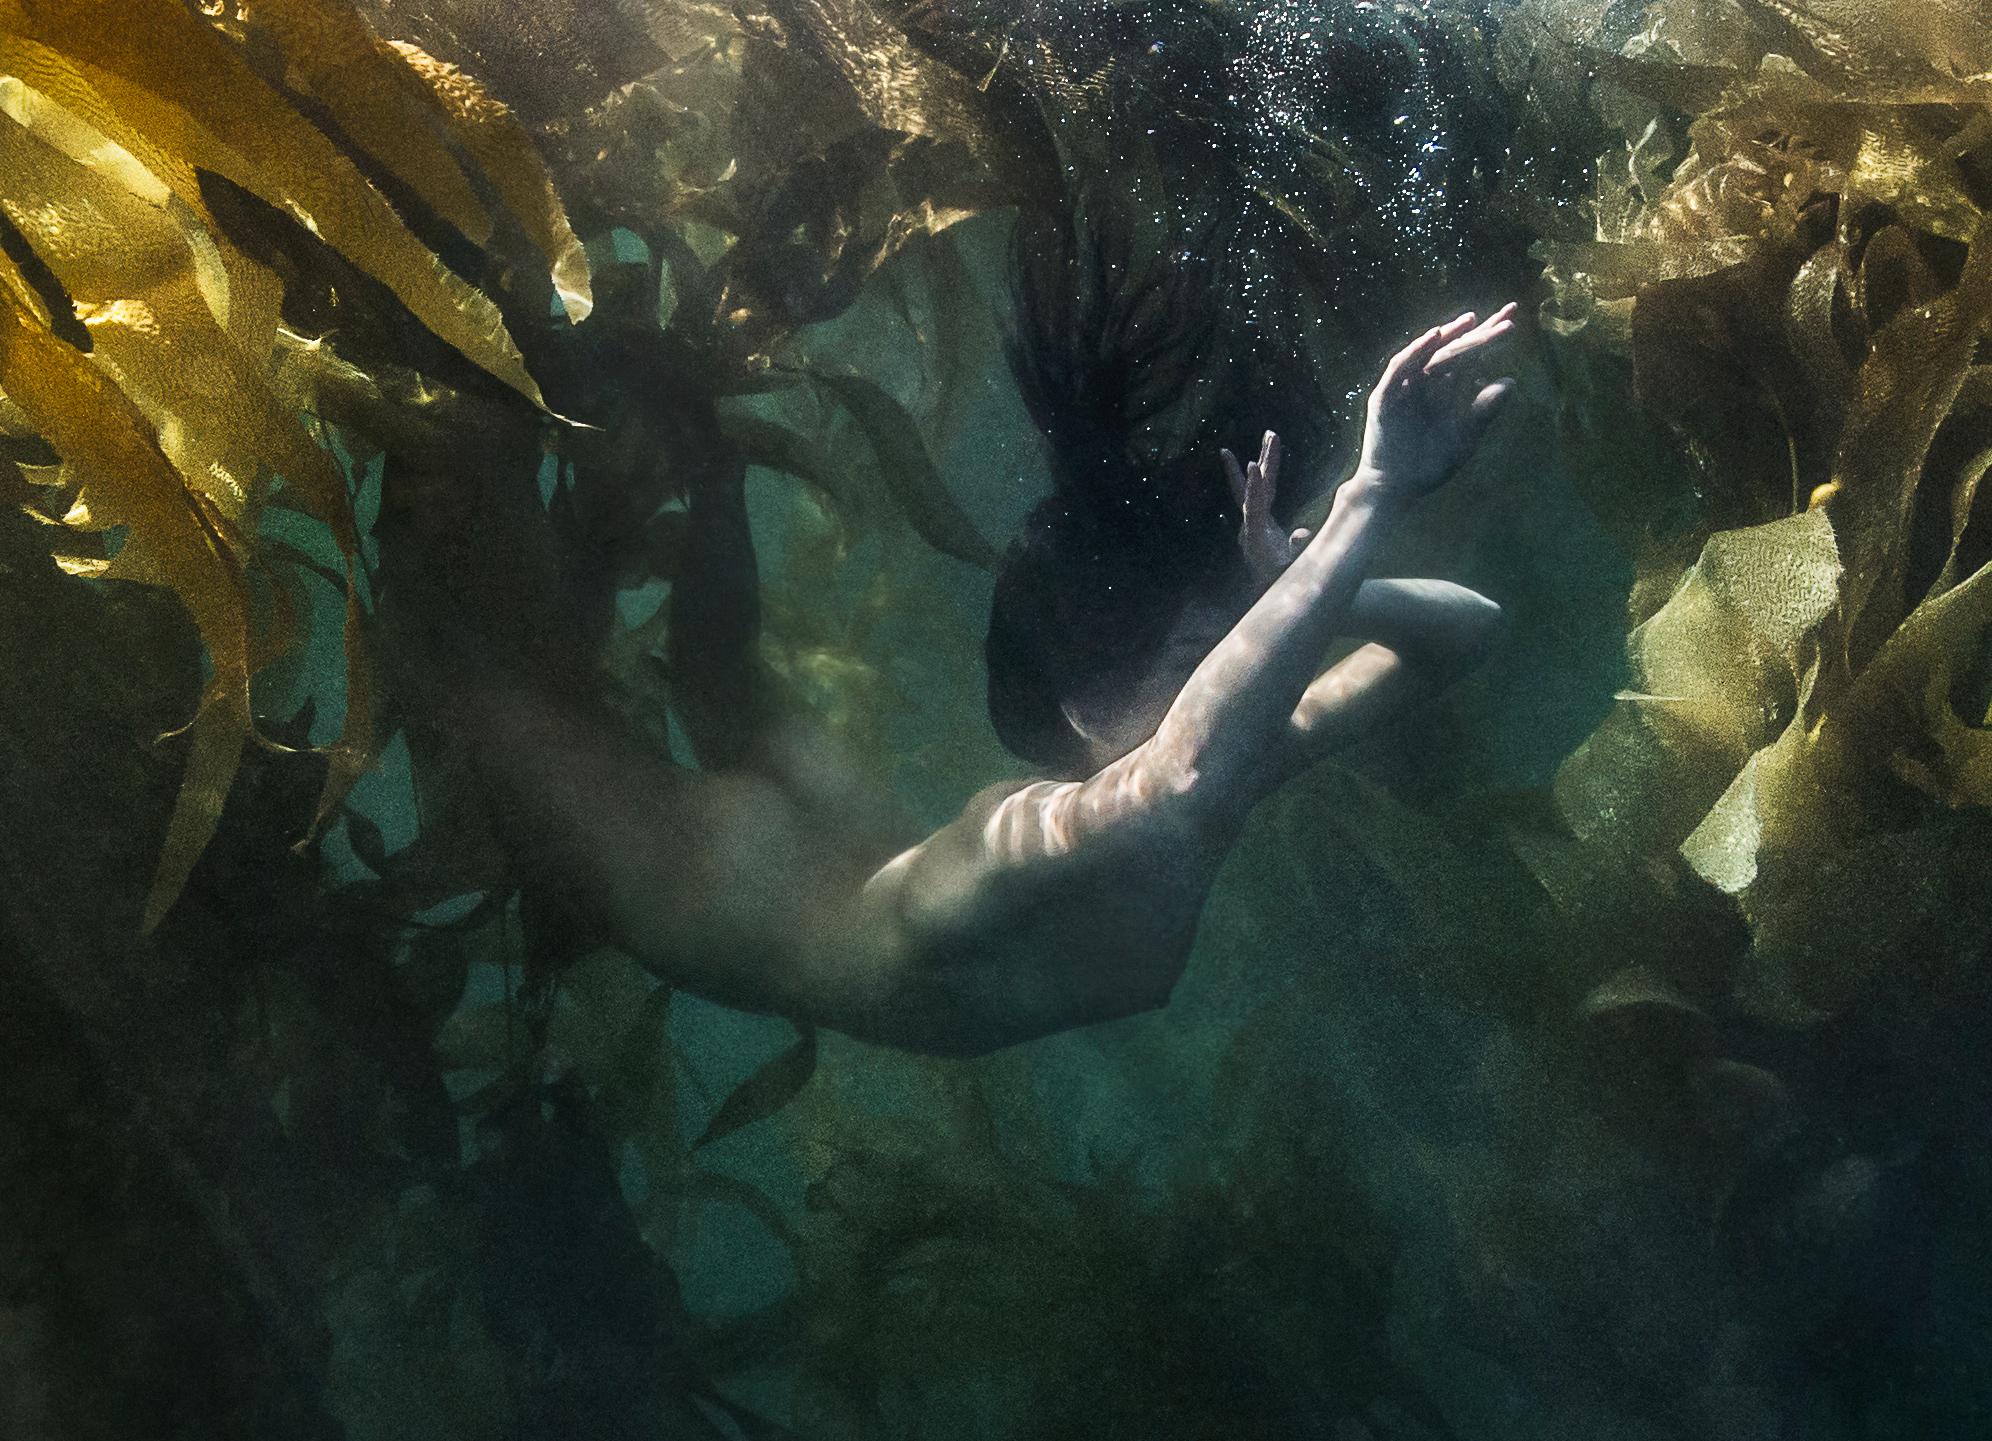 Jungling Mermaid - photographie nue sous-marine - pigment d'archives 16x24